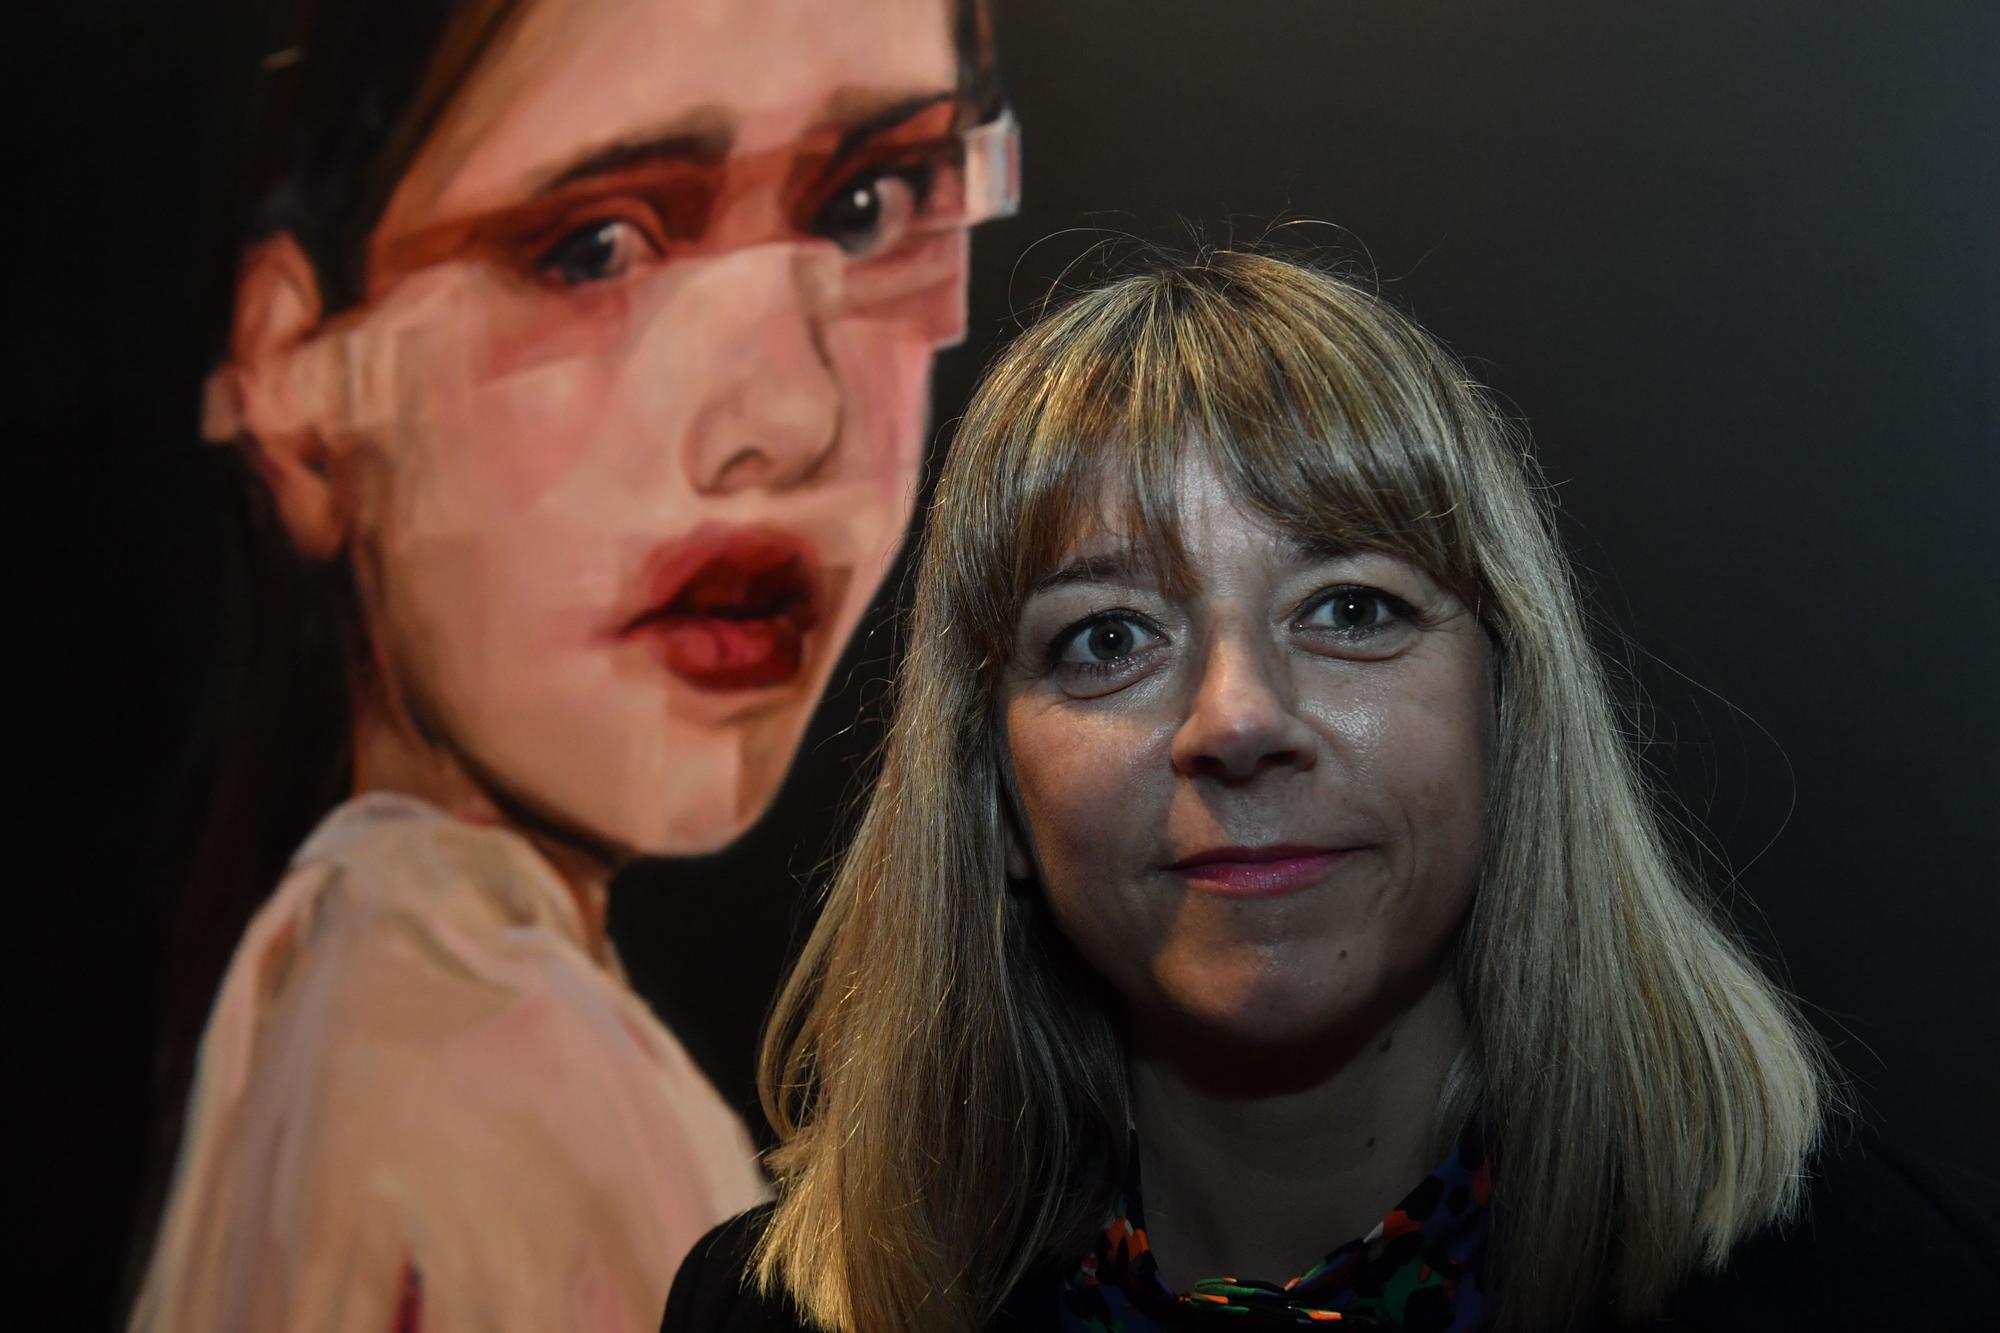 La artista Yolanda Dorda interpreta la realidad femenina en su muestra 'Desexos'